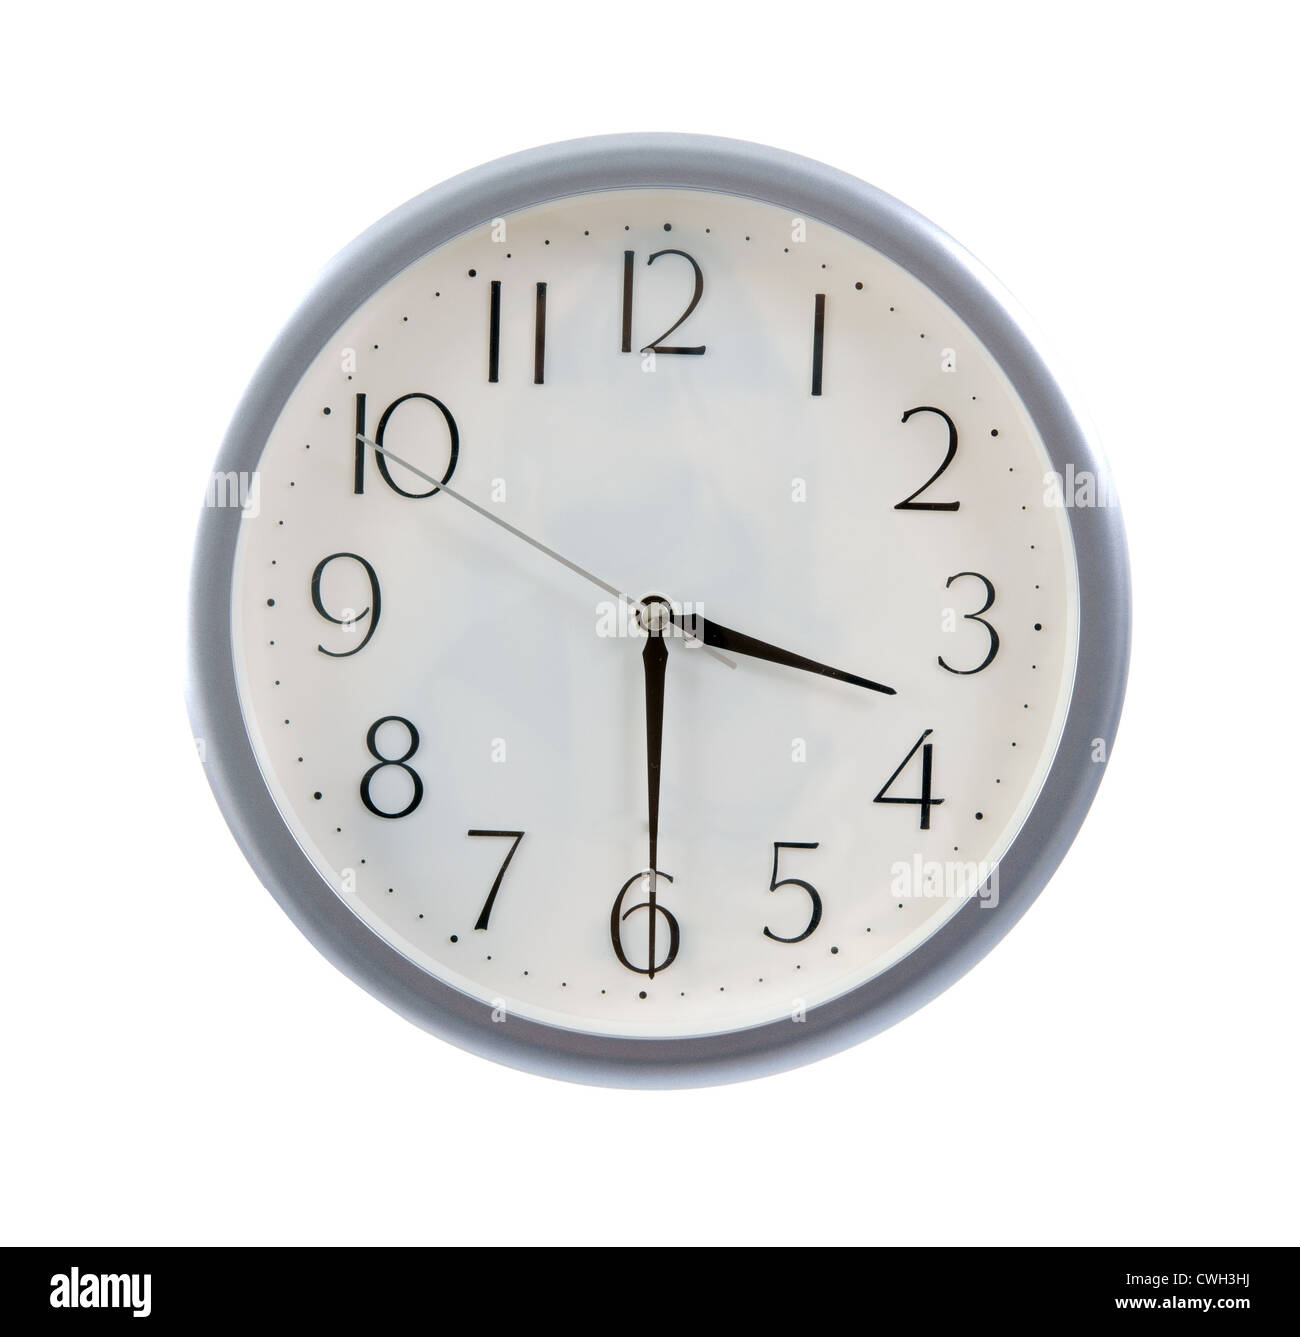 3 30 clock Imágenes recortadas de stock - Alamy